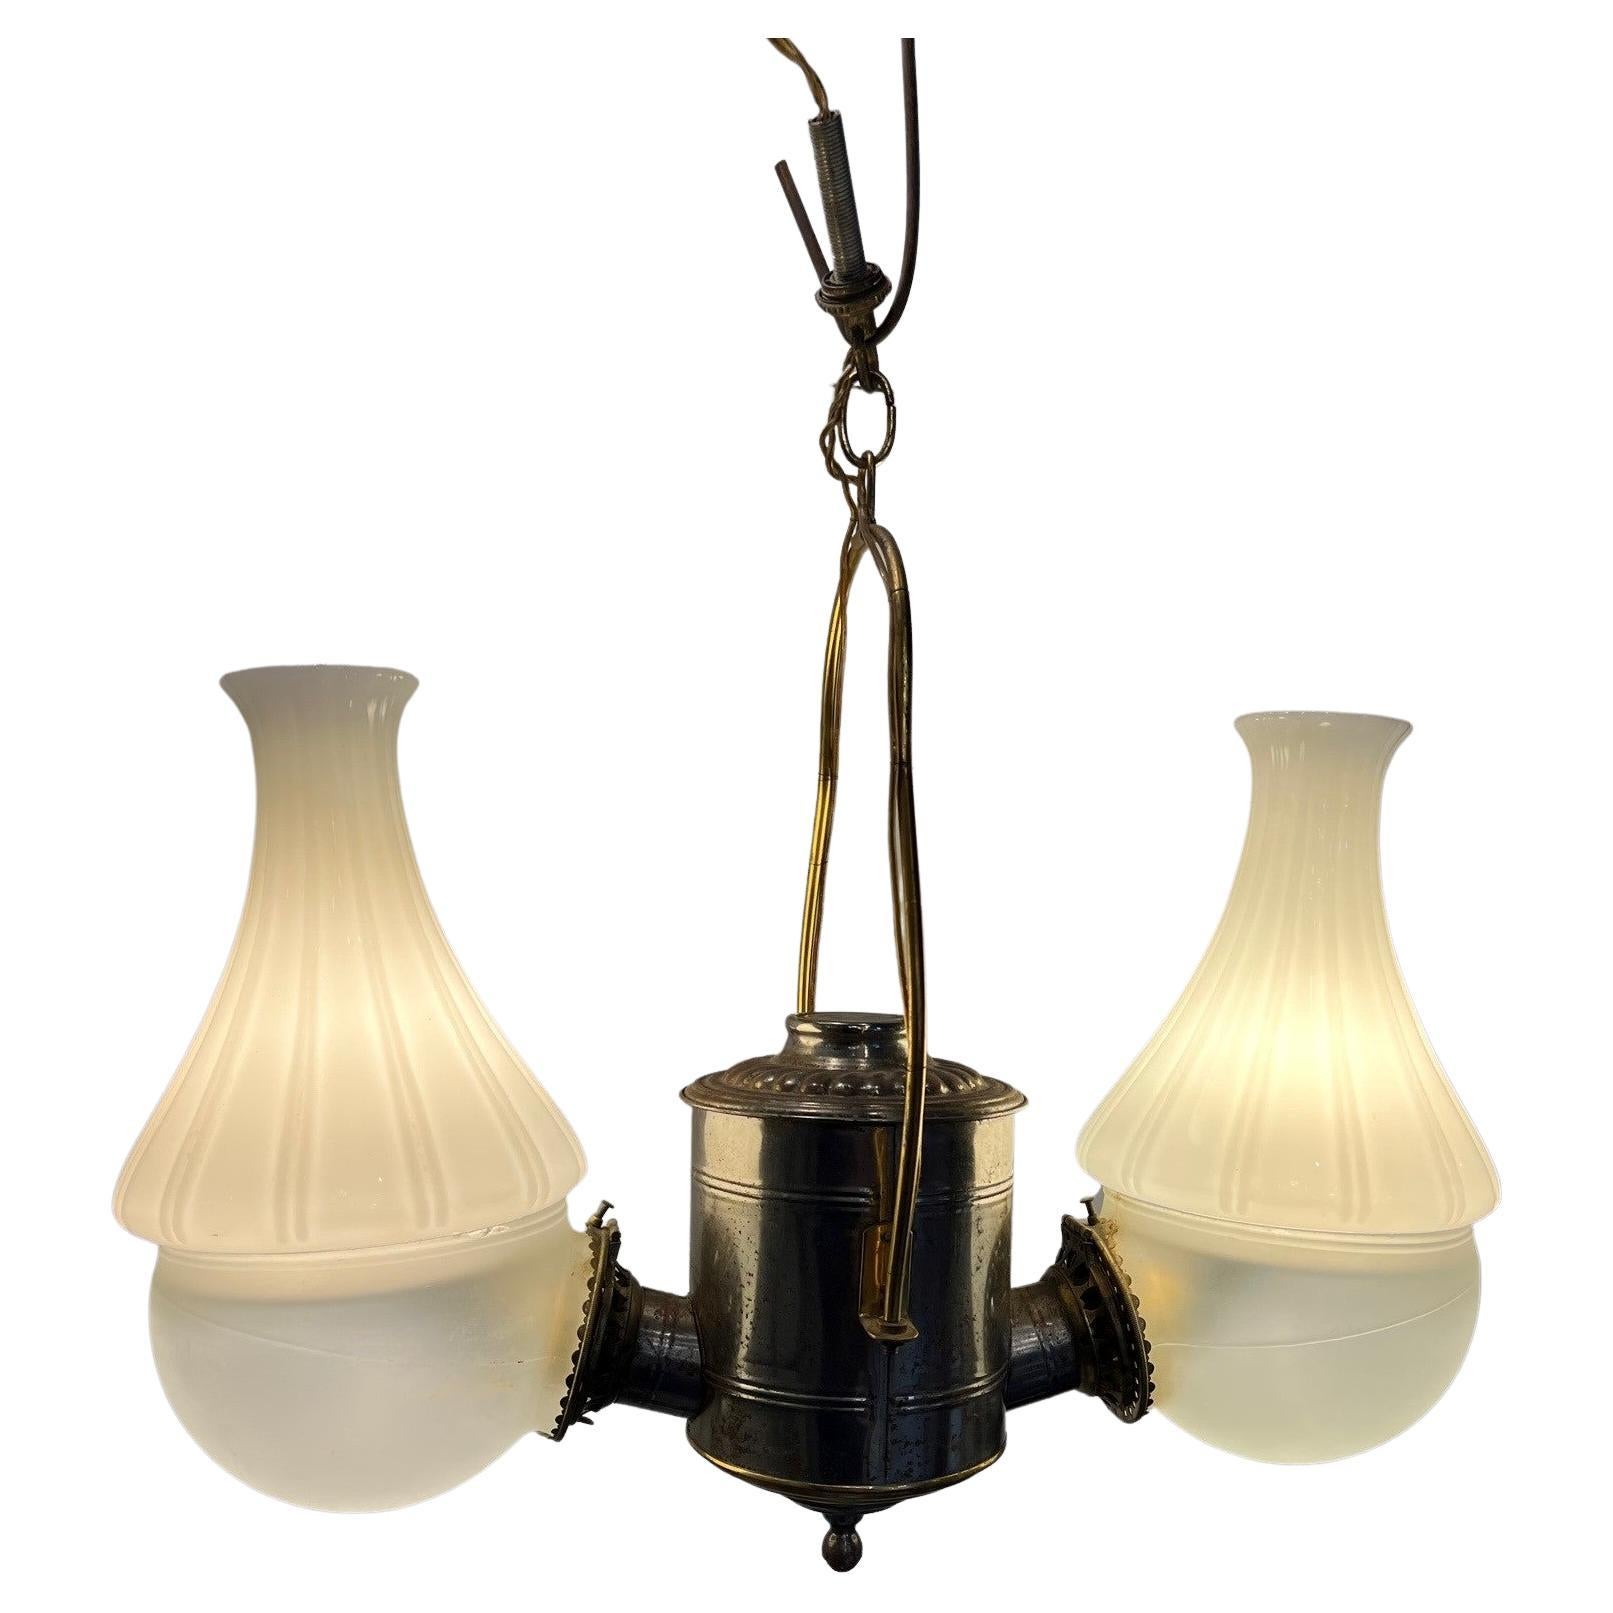 Fin du 19e siècle Angle Lamp Co. Suspension à 2 lumières en kérosène électrifié 